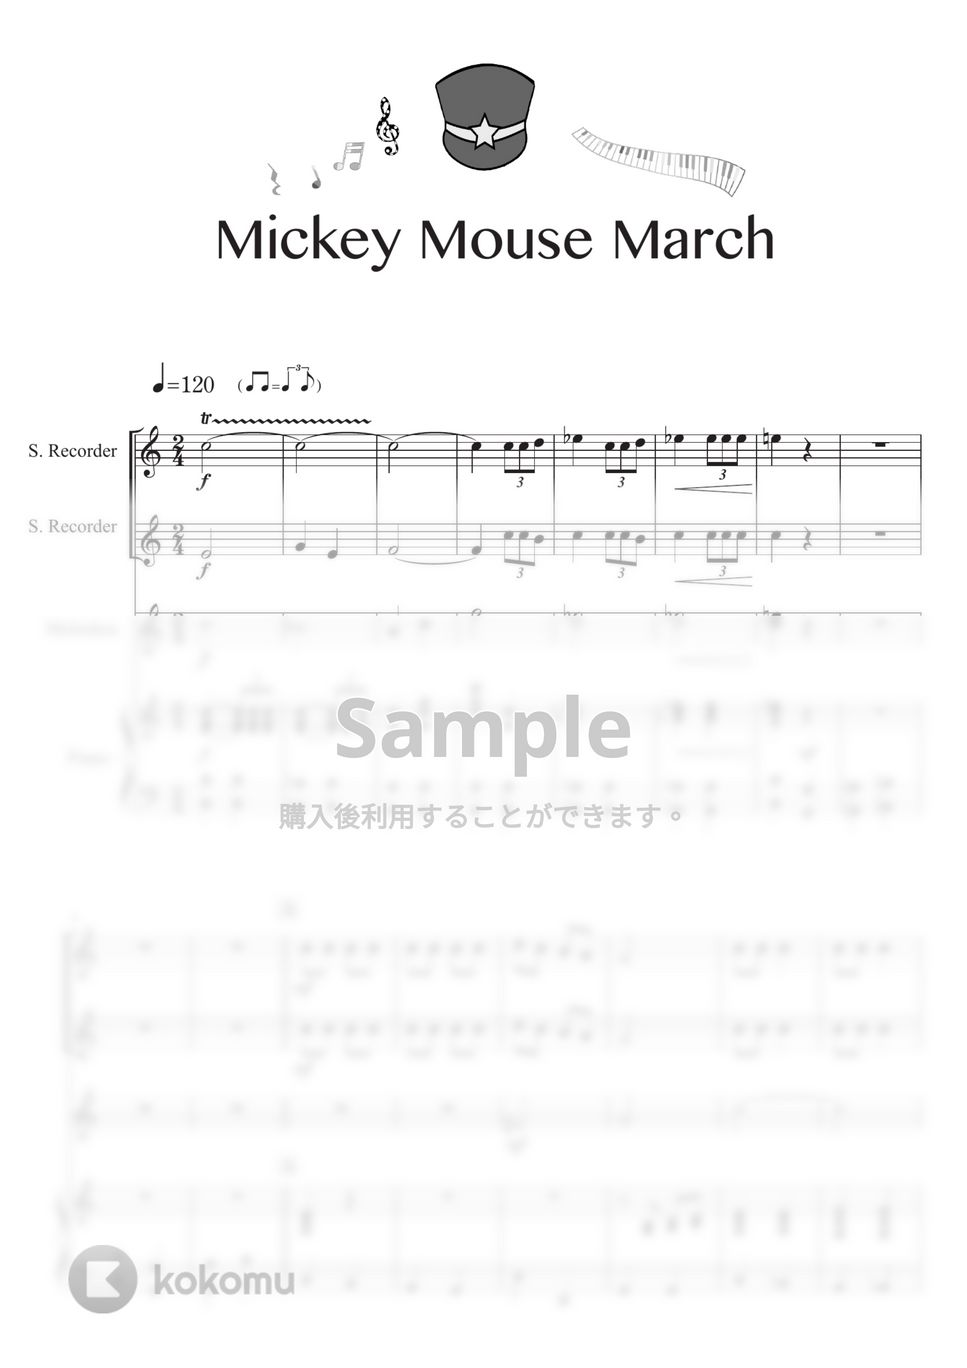 ミッキーマウスマーチ (リコーダーアンサンブル) by 栗原義継